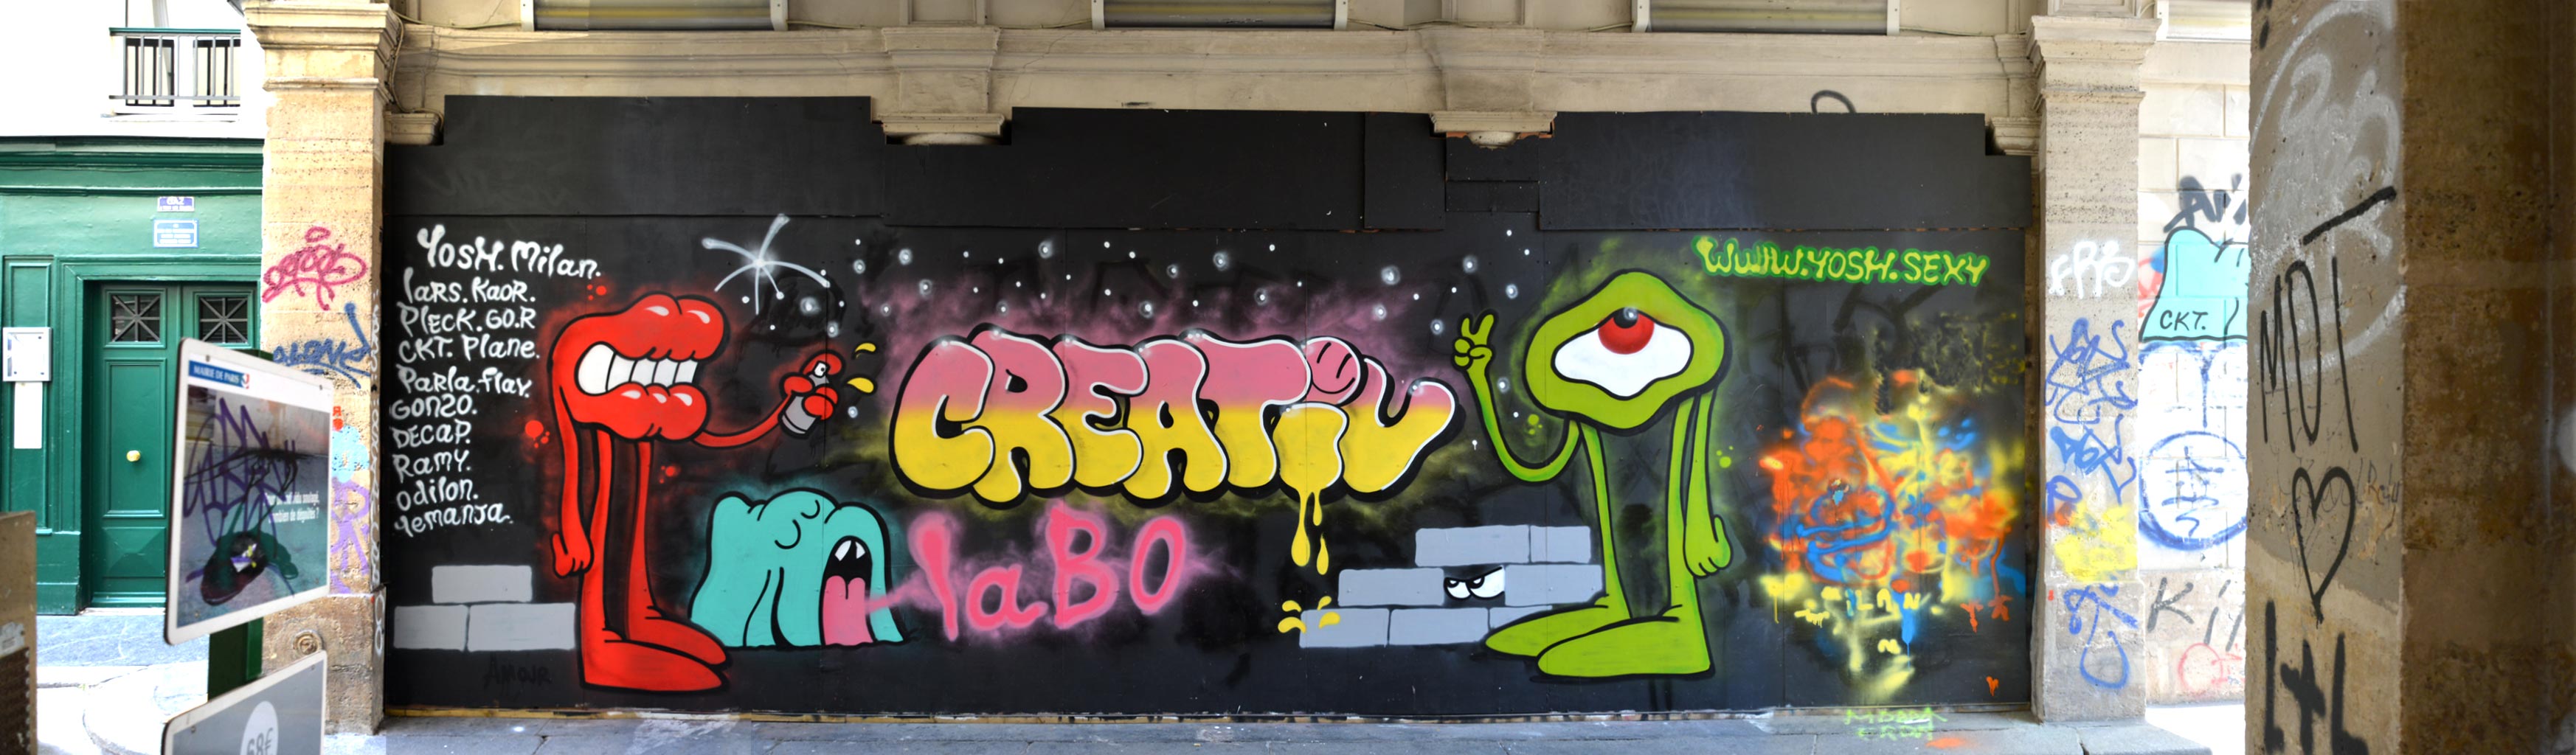 Street Art by Créative Labo